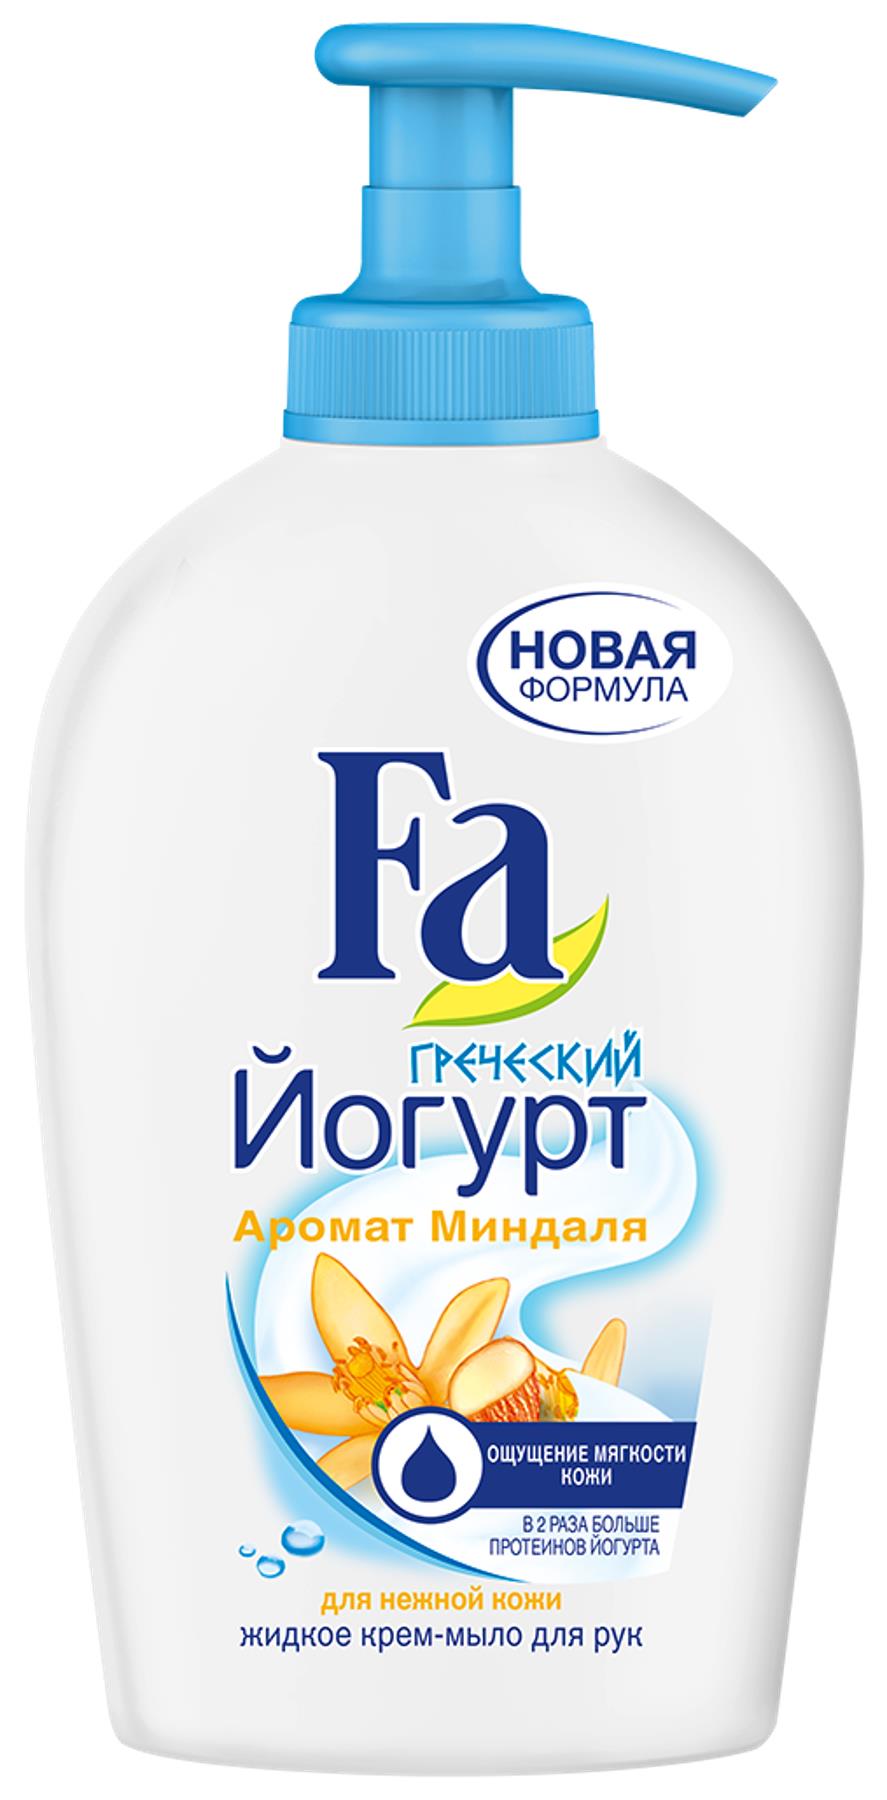 Fa Жидкое крем-мыло греческий Йогурт Миндаль, 250 мл